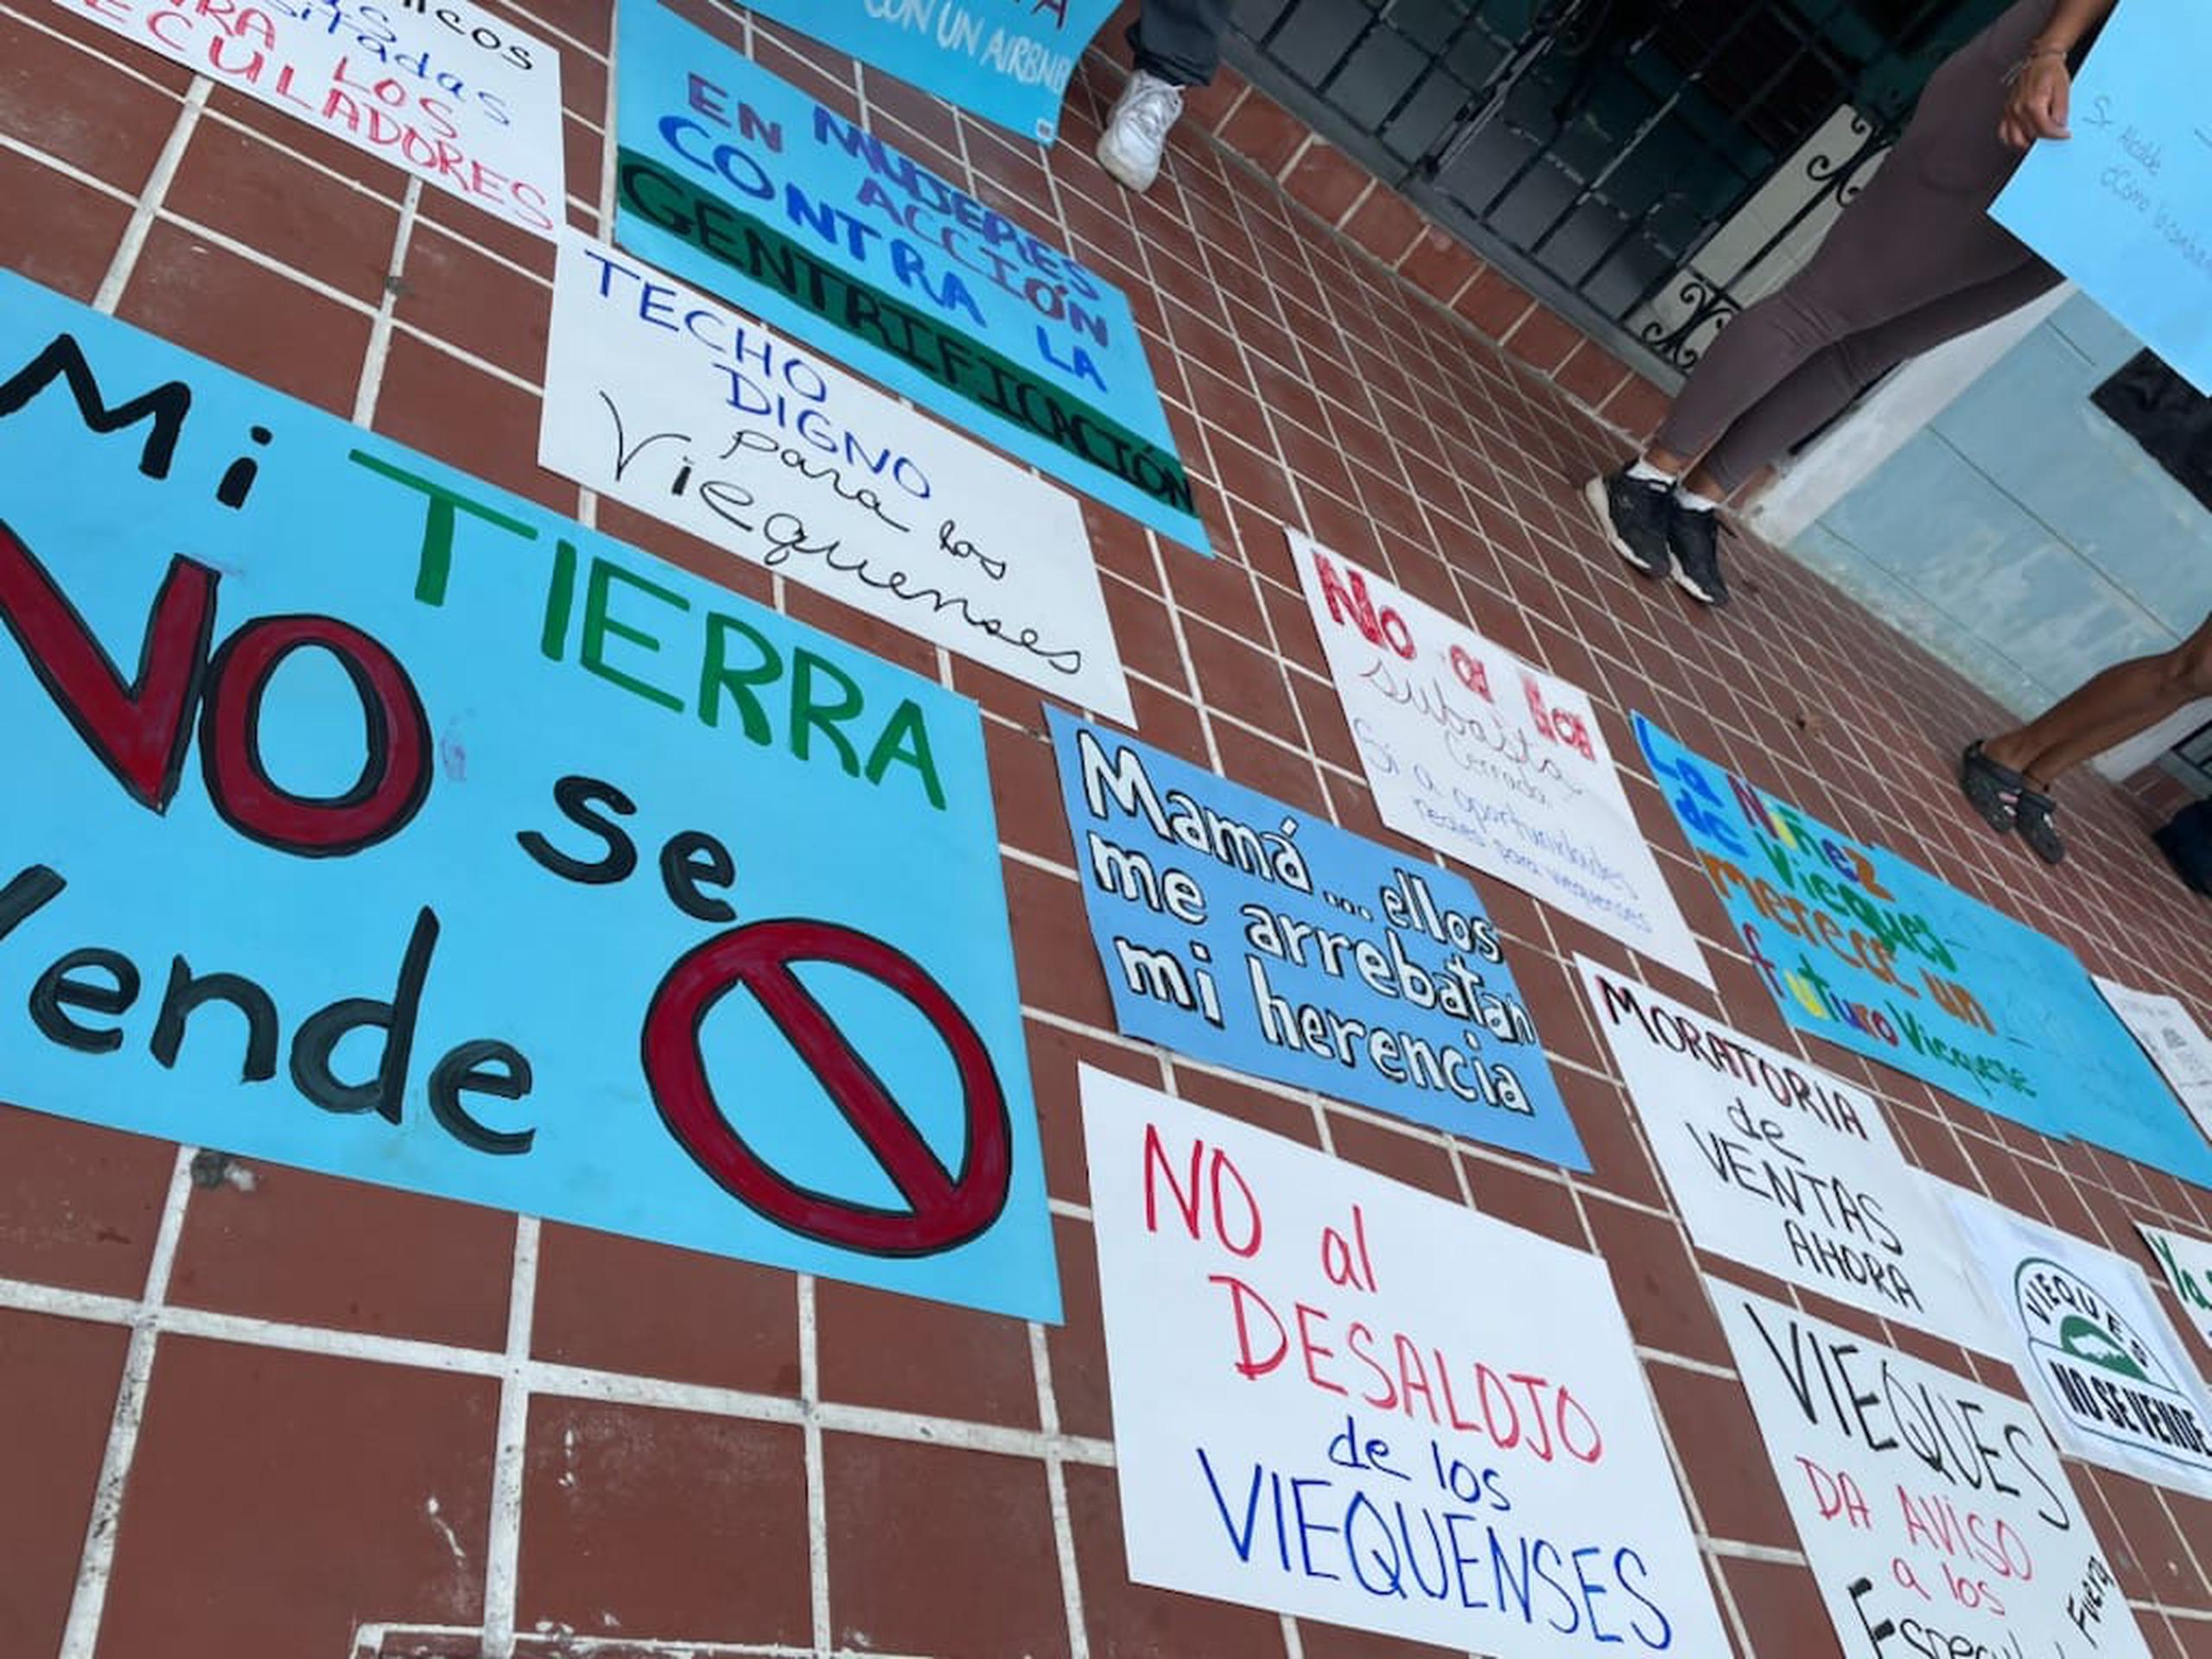 Carteles preparados por manifestantes para la protesta que realizan por la subasta de terrenos del municipio de Vieques.